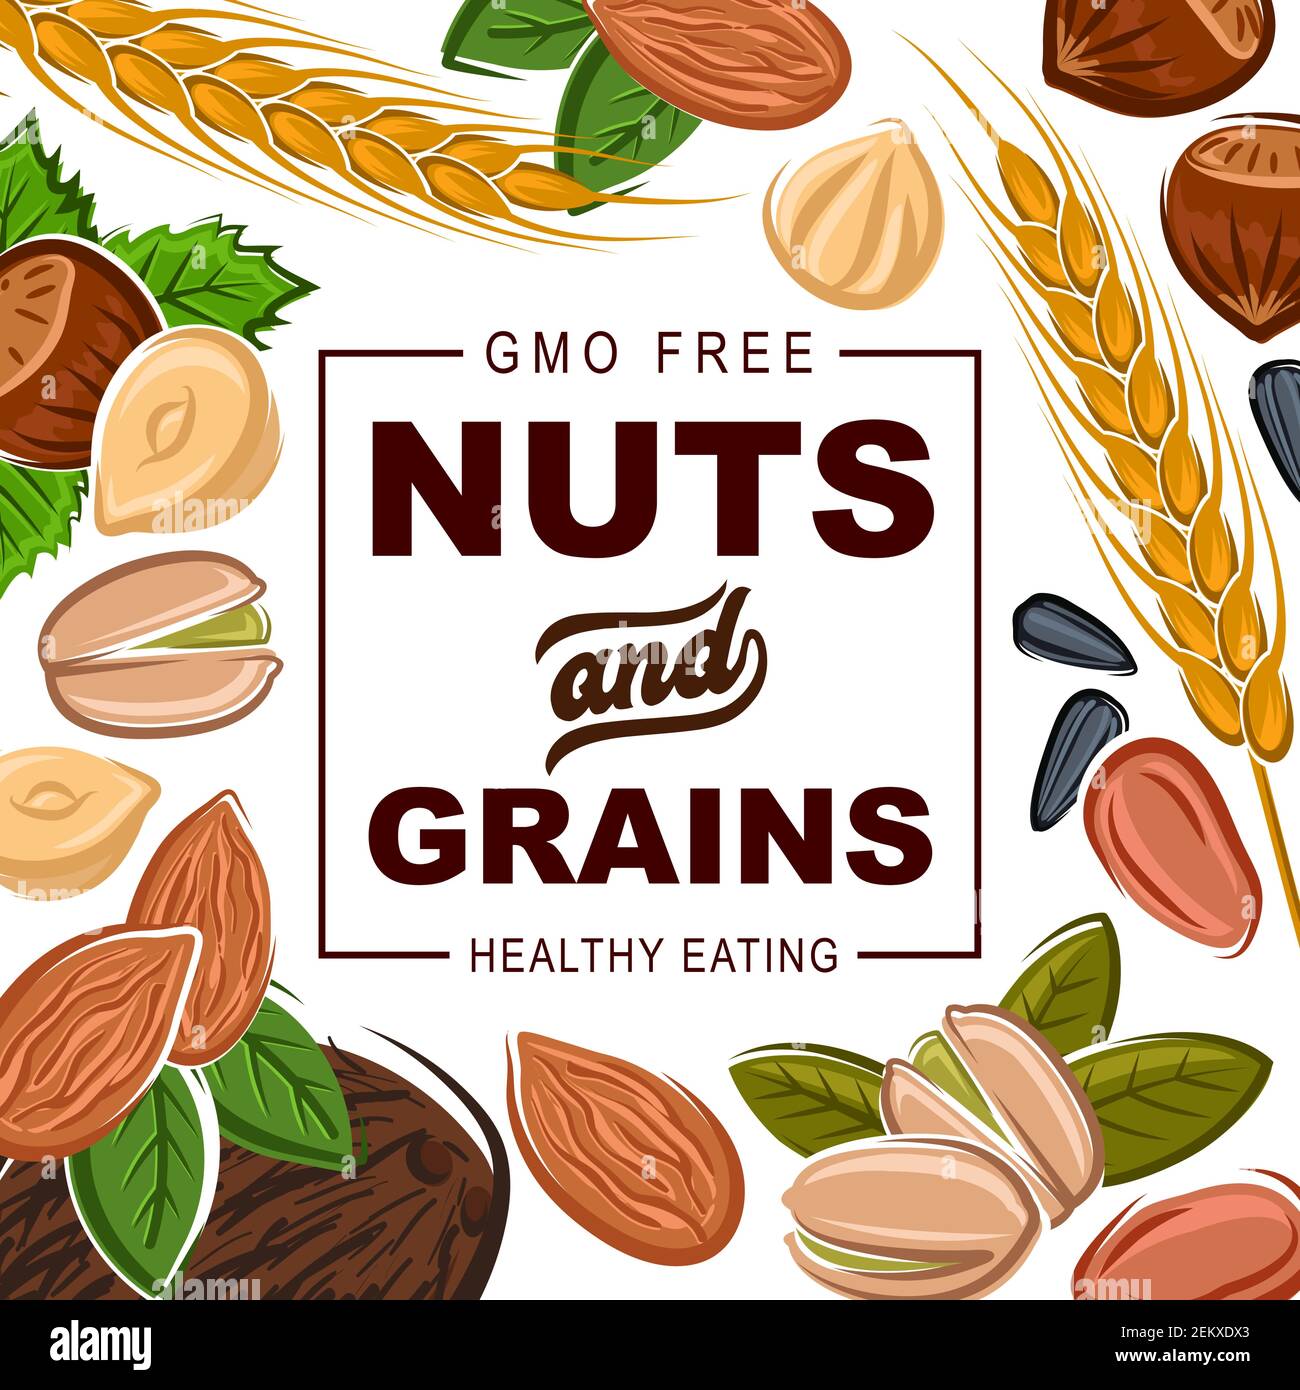 Nüsse und Getreide, natürliche gesunde Lebensmittel Bio-Getreide Ernährung.  Vector GMO frei Kokosnuss, Haselnuss oder Walnuss und Mandel,  Sonnenblumenkerne und Pistazie Stock-Vektorgrafik - Alamy